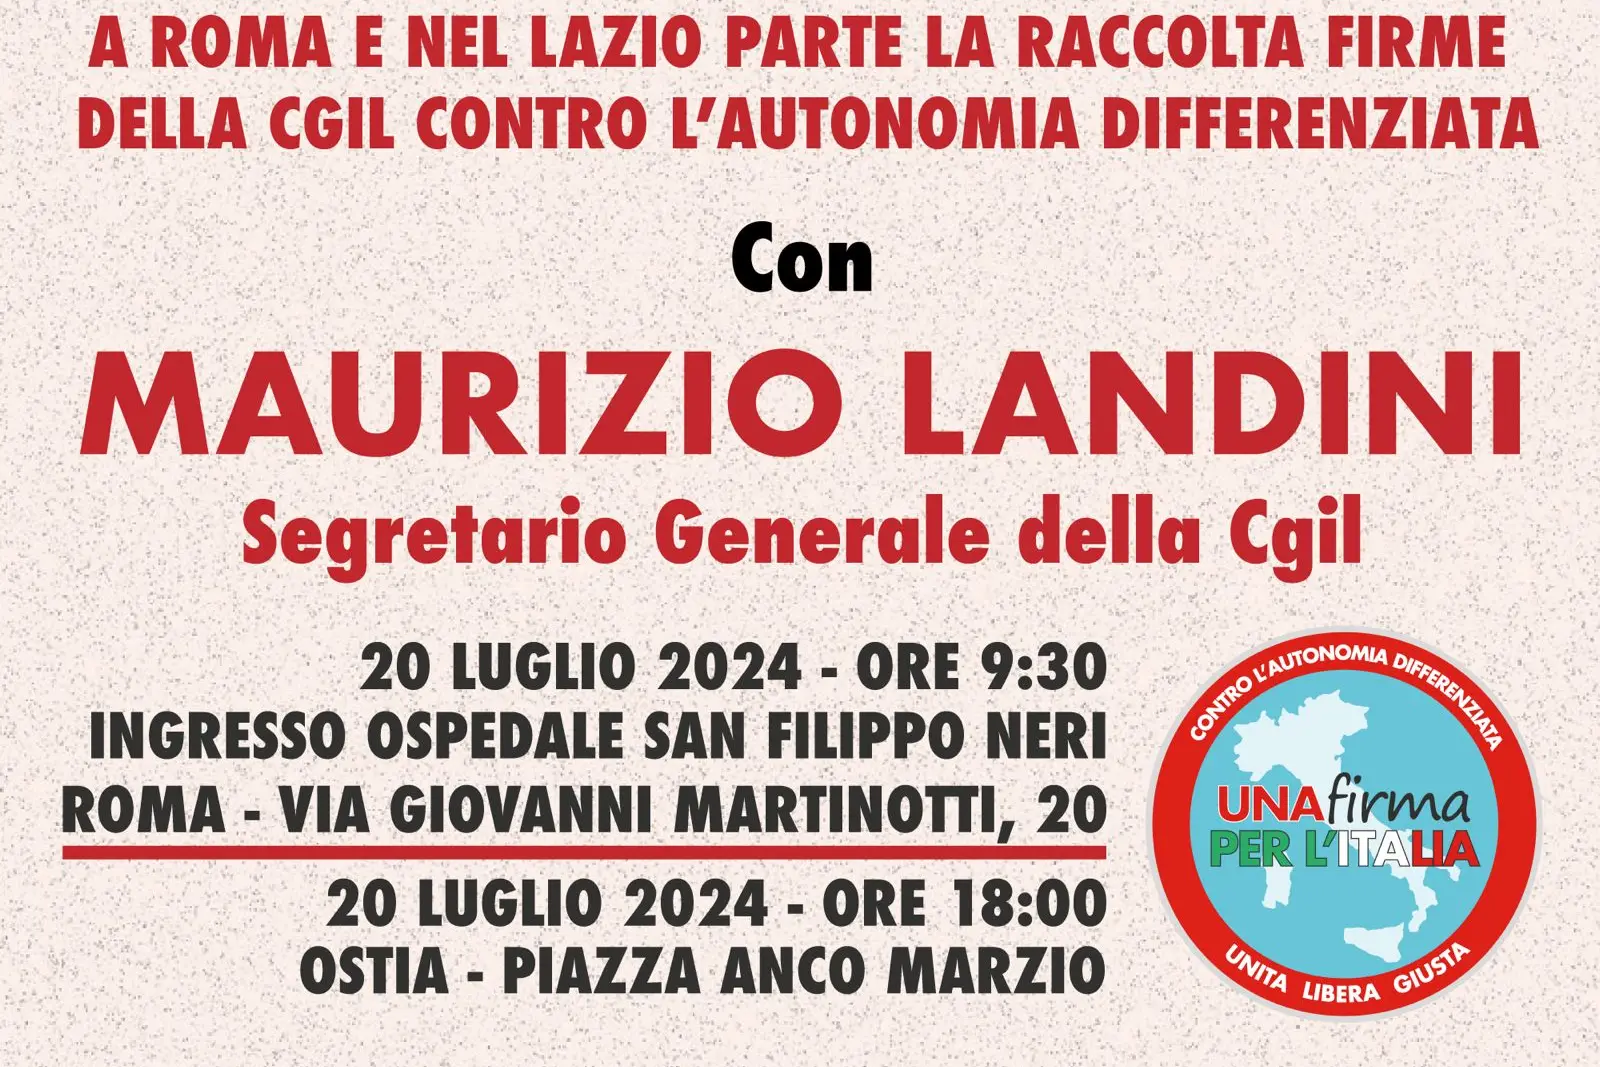 Autonomia differenziata: 20 luglio Landini a Roma, parte raccolta firme per referendum